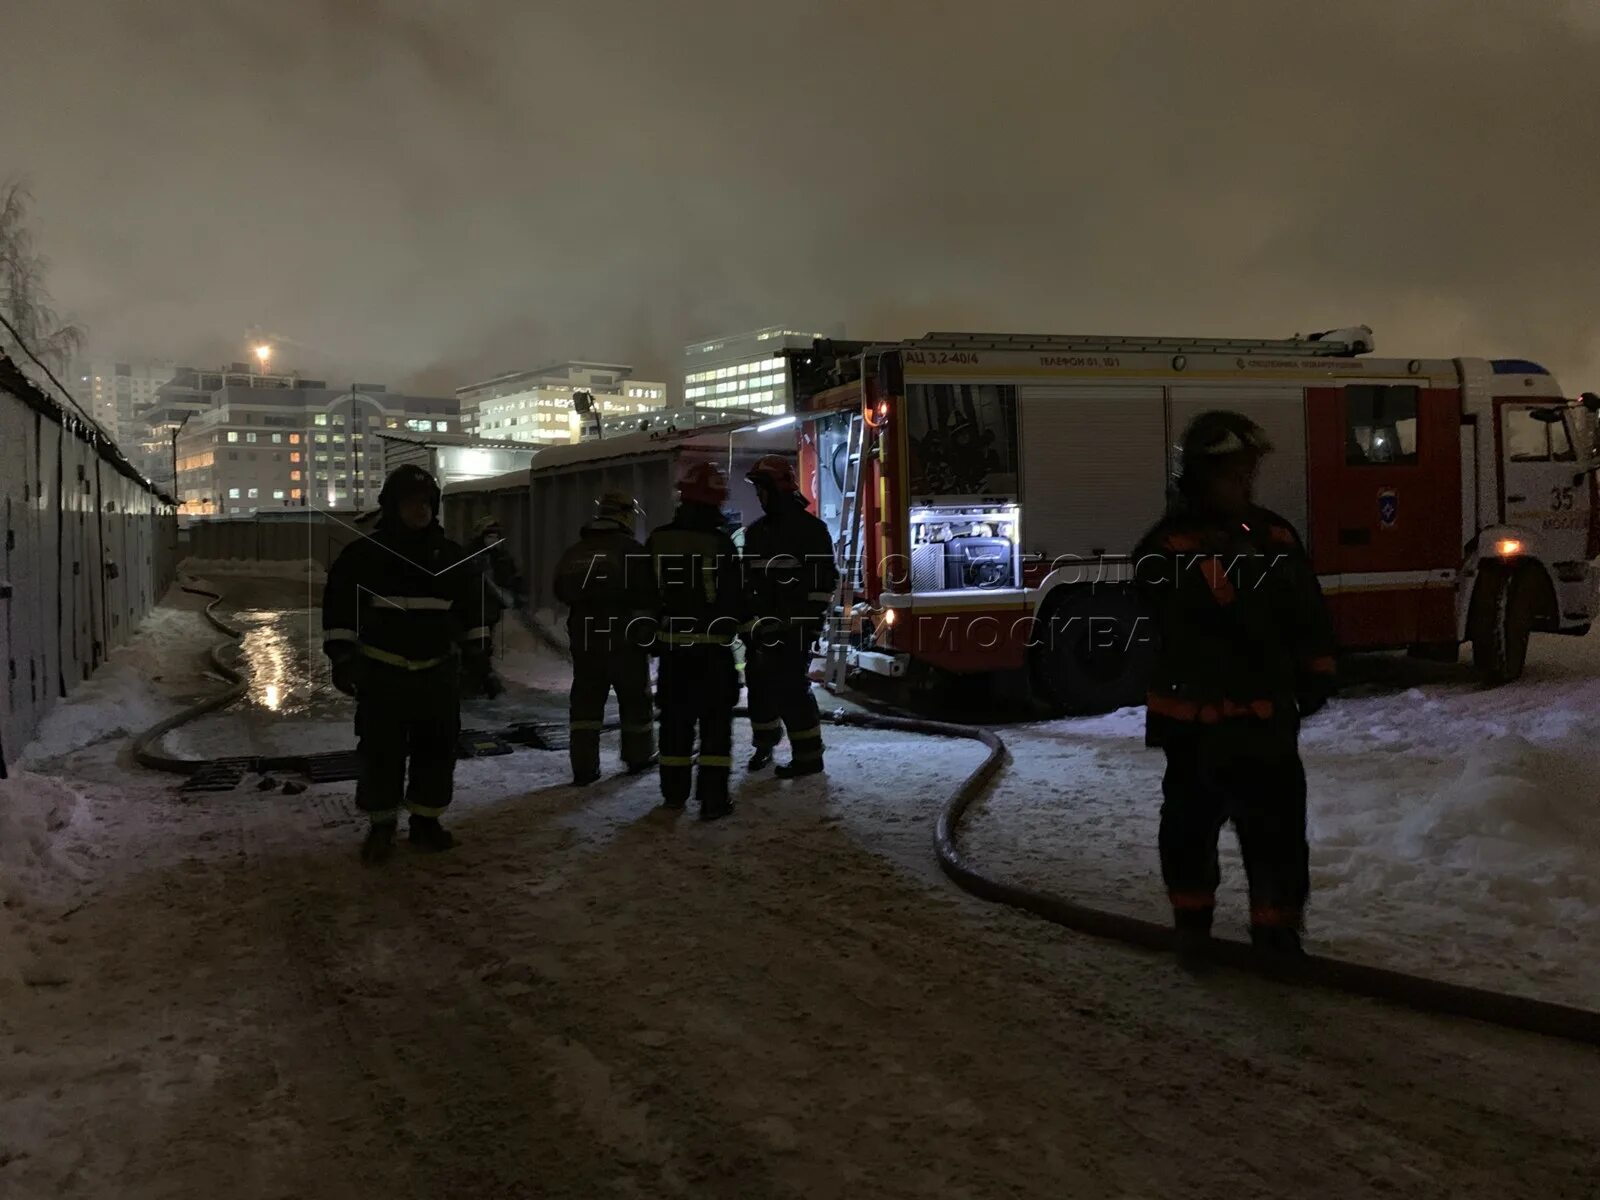 Что случилось а москве сегодня. Пожар в Москве сегодня на севере Москвы. Пожар на севере Москвы сейчас. Пожар в Москве сегодня на севере. Пожар в Москве сейчас на севере Москвы.